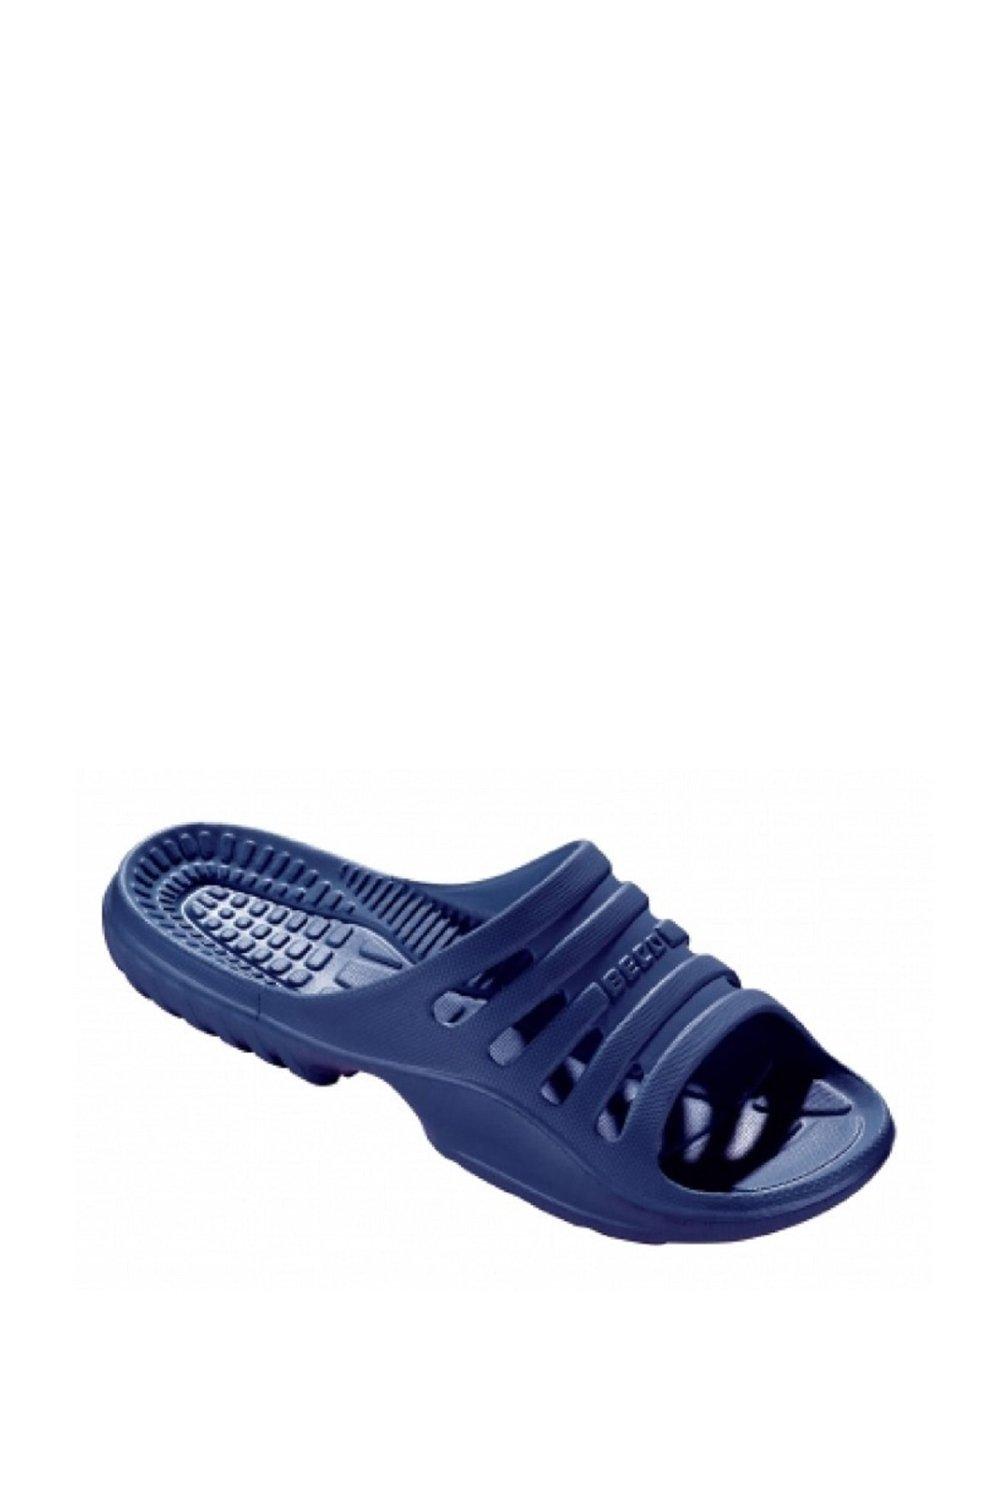 Водная обувь Beco, темно-синий